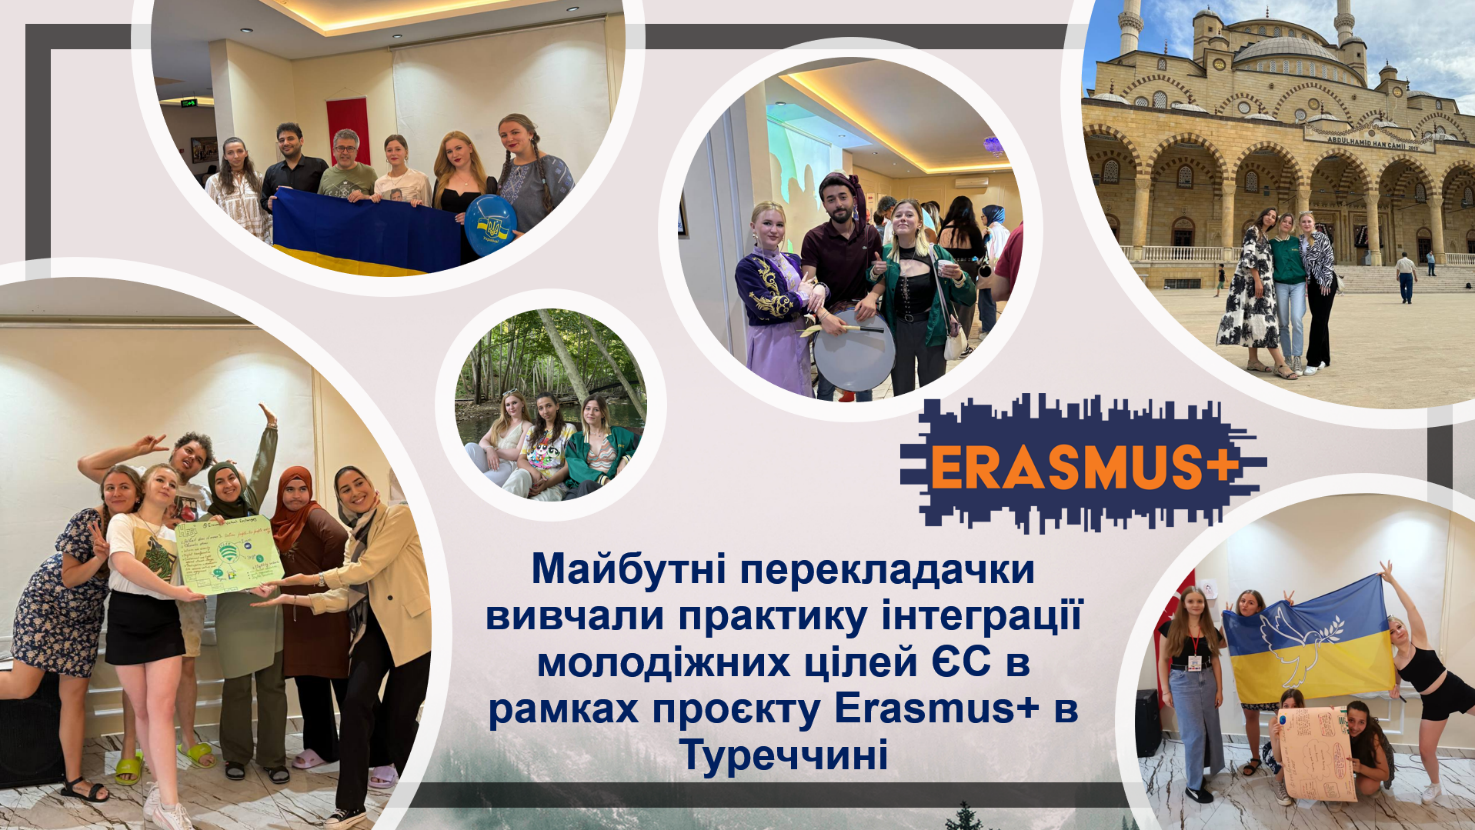 Майбутні перекладачки вивчали практичні кейси інтеграції молодіжних цілей ЄС, долучившись до проєкту Erasmus+ в Туреччині